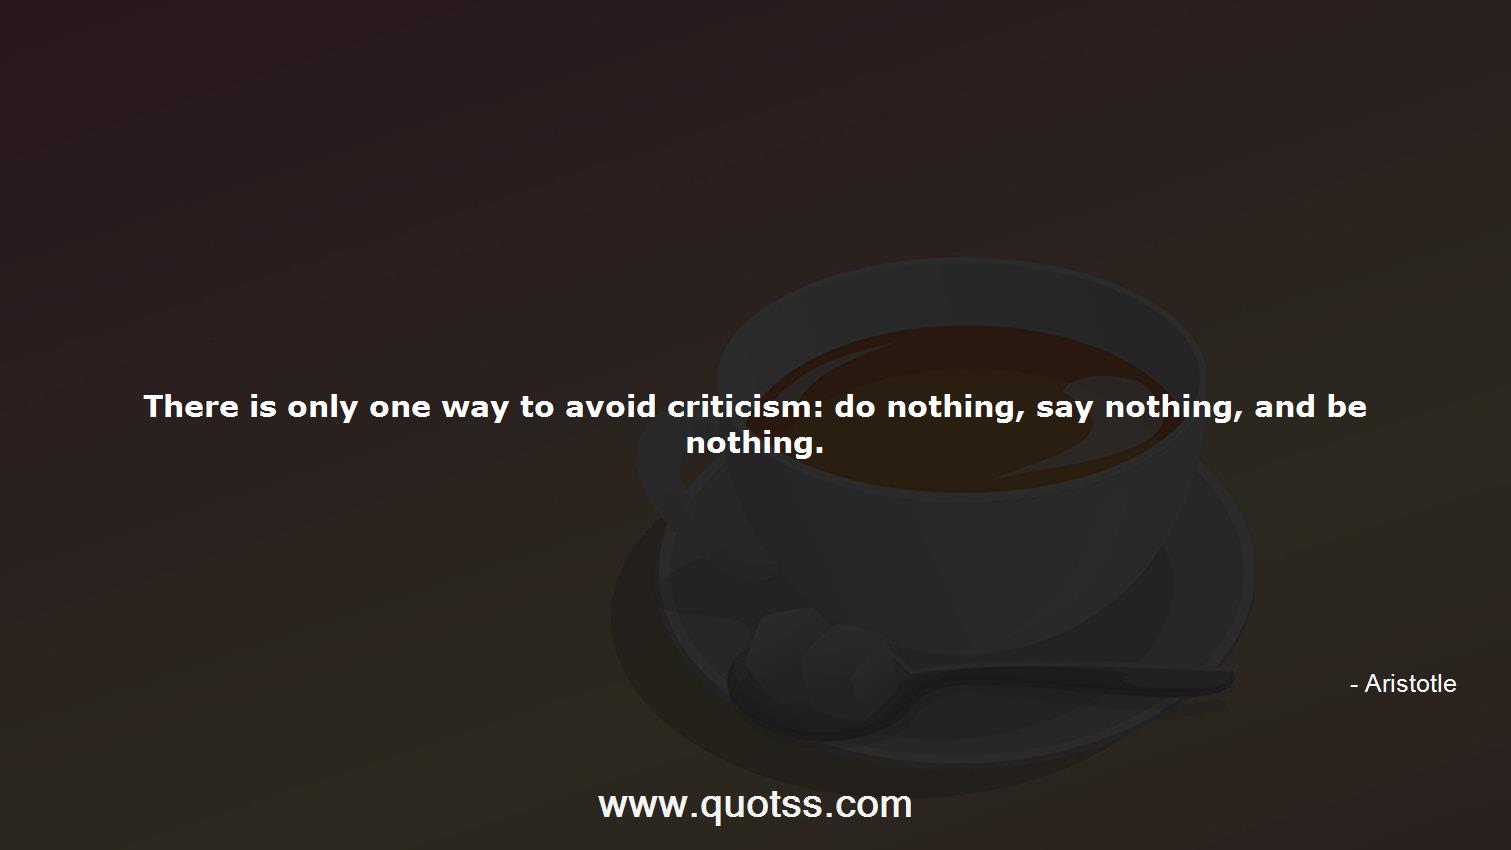 Aristotle Quote on Quotss